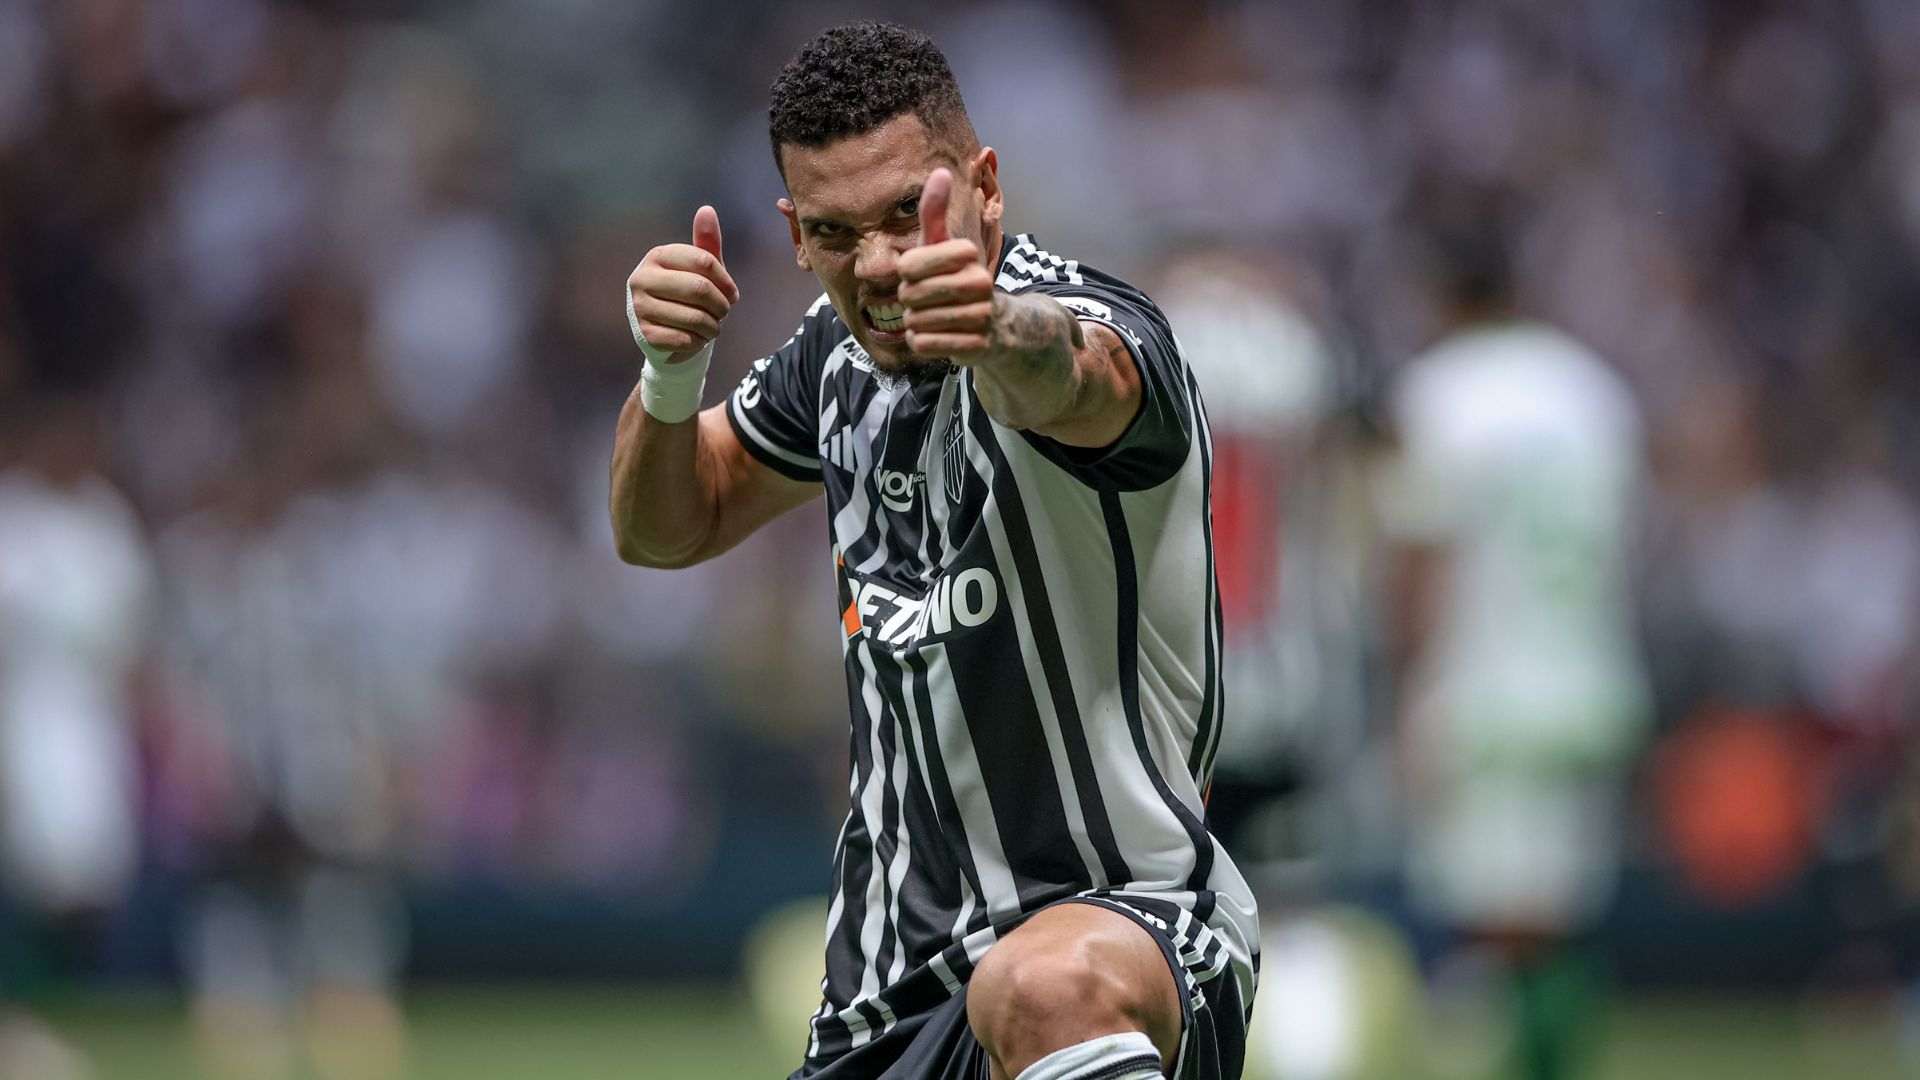 Paulinho comemorando gol marcado contra o América-MG (Crédito: Pedro Souza / Atlético)